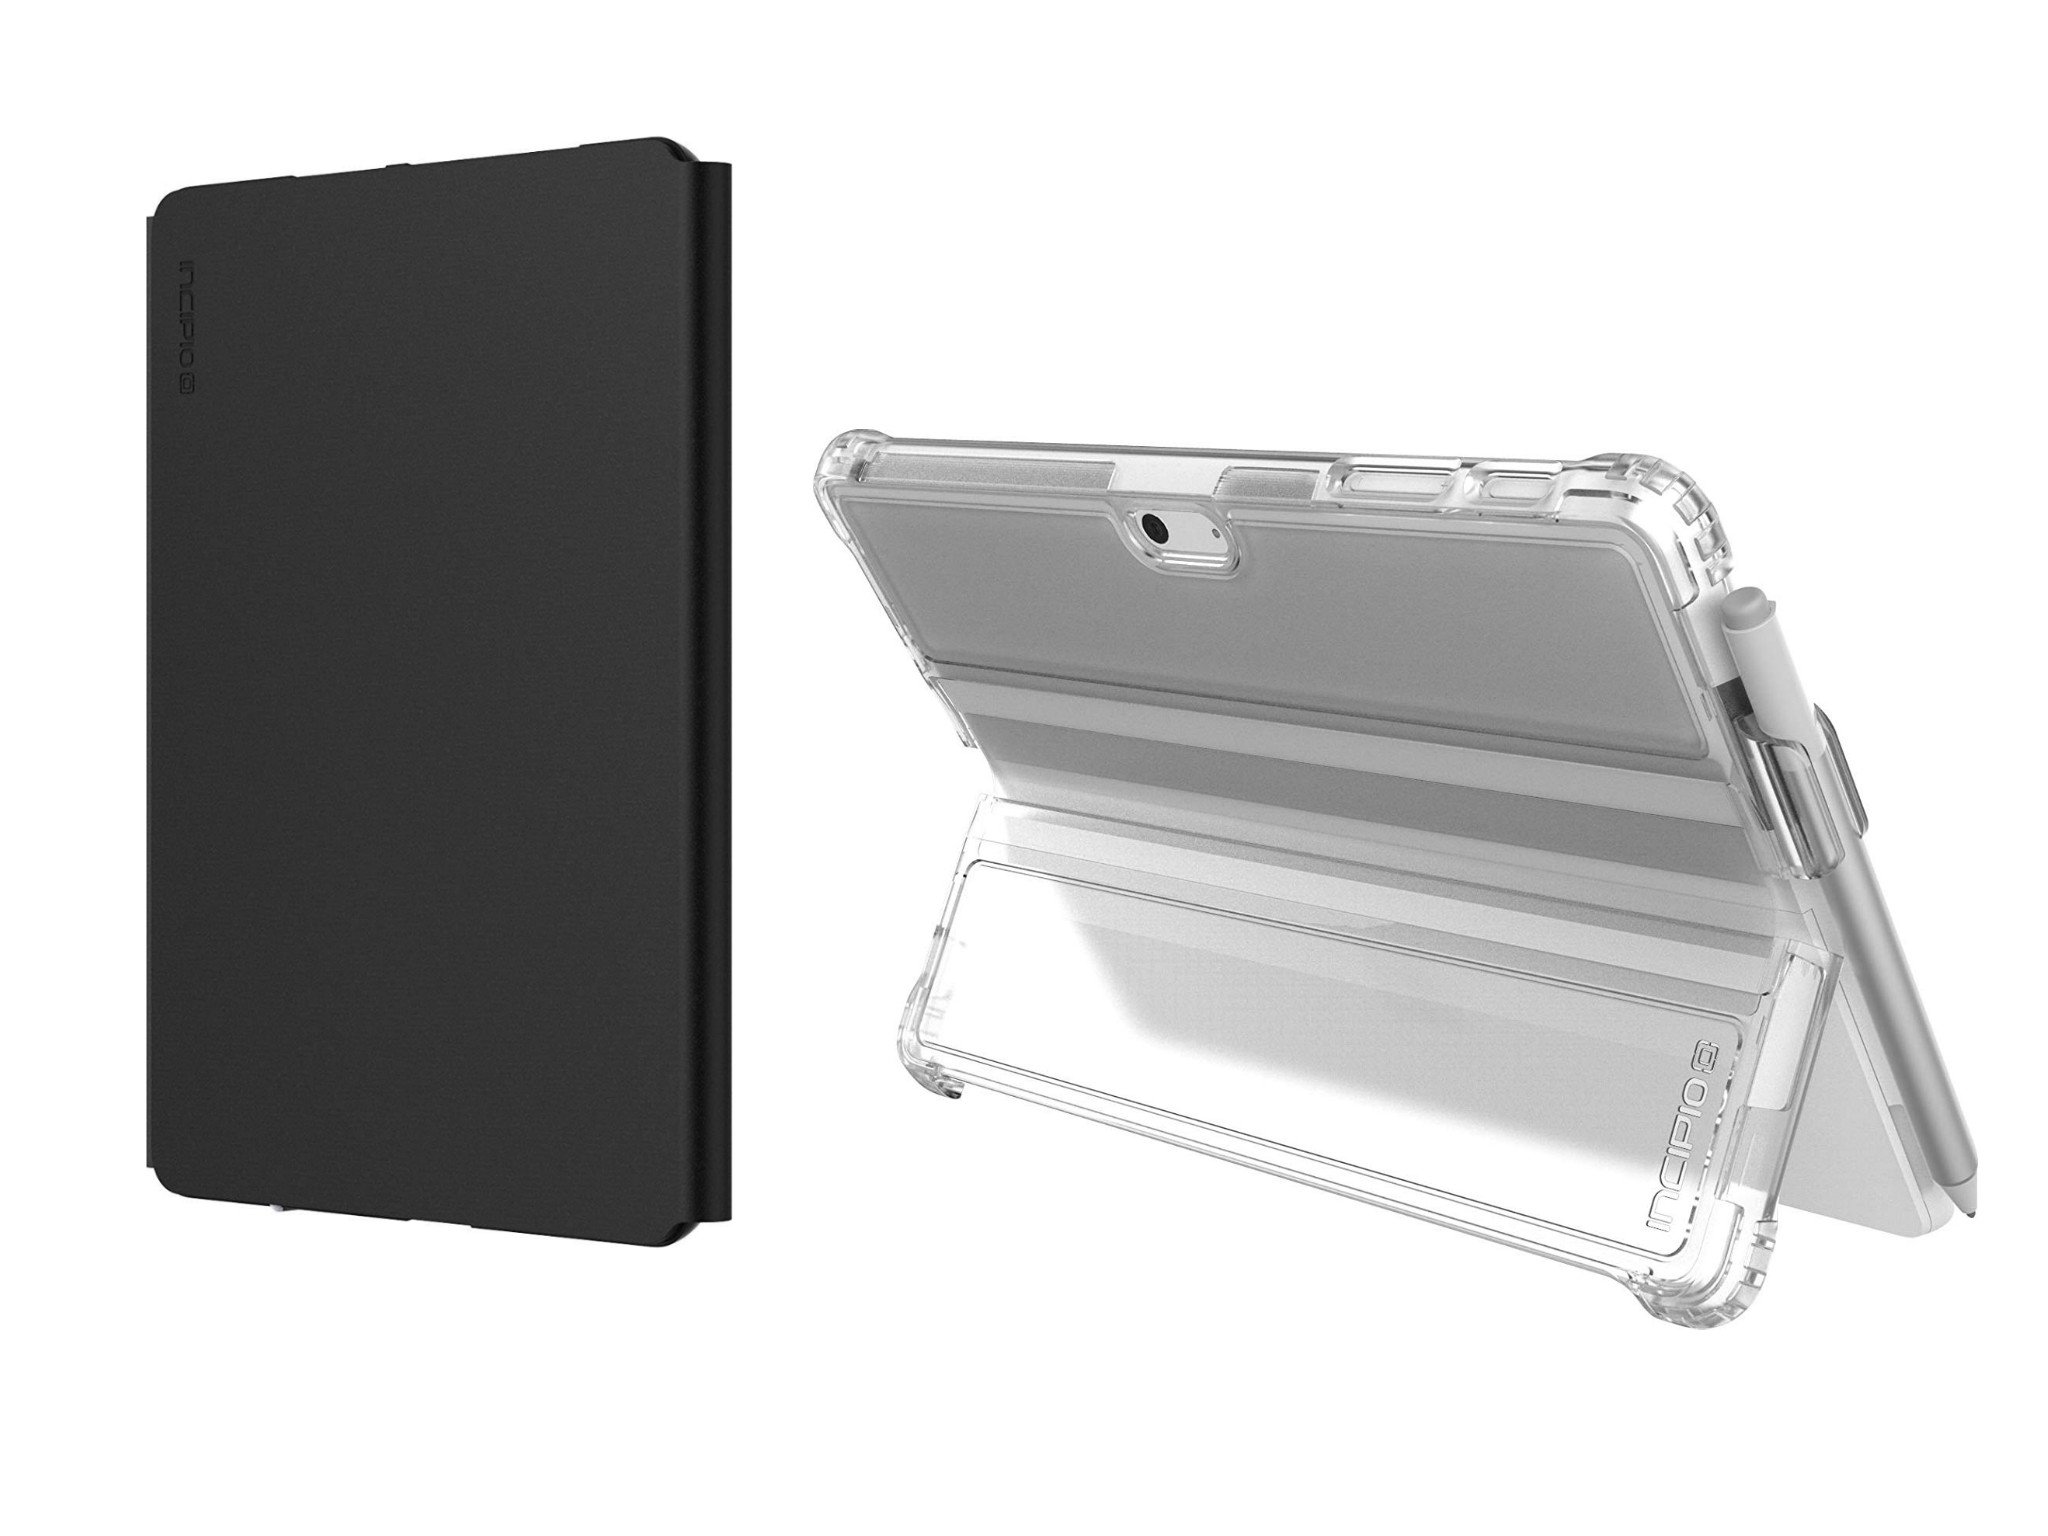 Incipio launches fresh pair of Surface Go cases